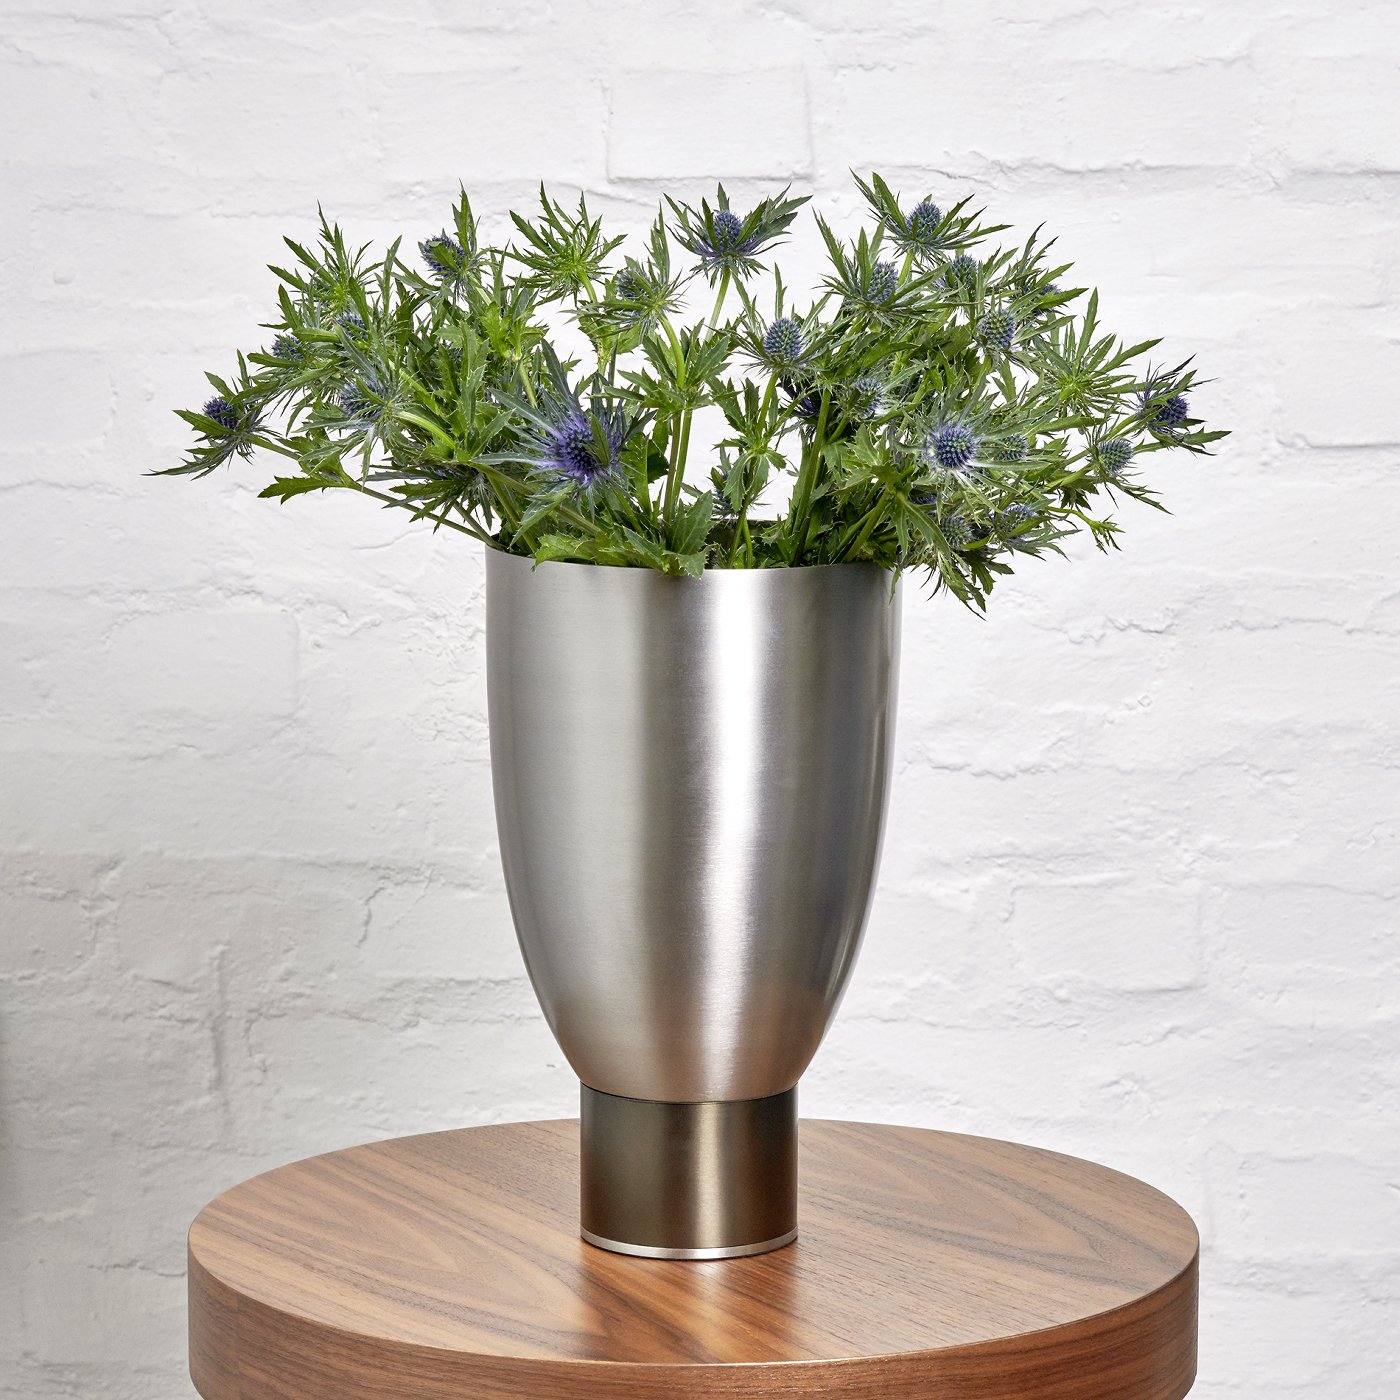 Oslo vase/vessel stainless steel